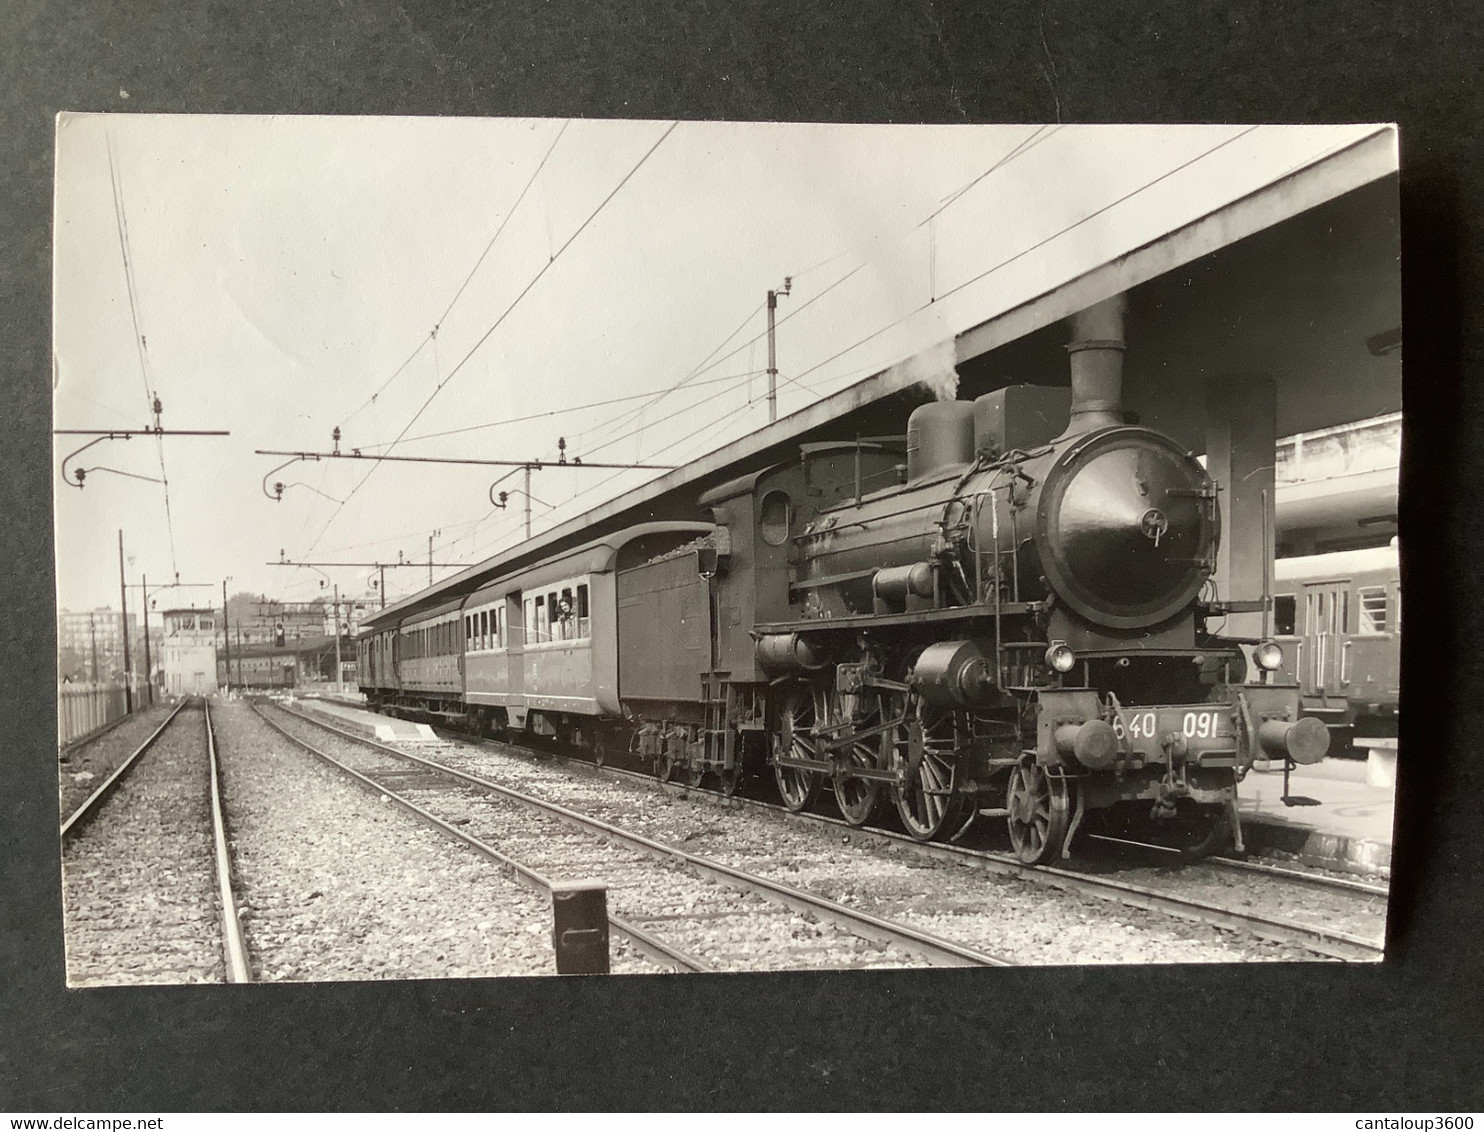 Photo Originale De Marc DAHLSTRÖM : Locomotive Vapeur 640 091 En Gare De Pavia Italie En 1972 - Trains